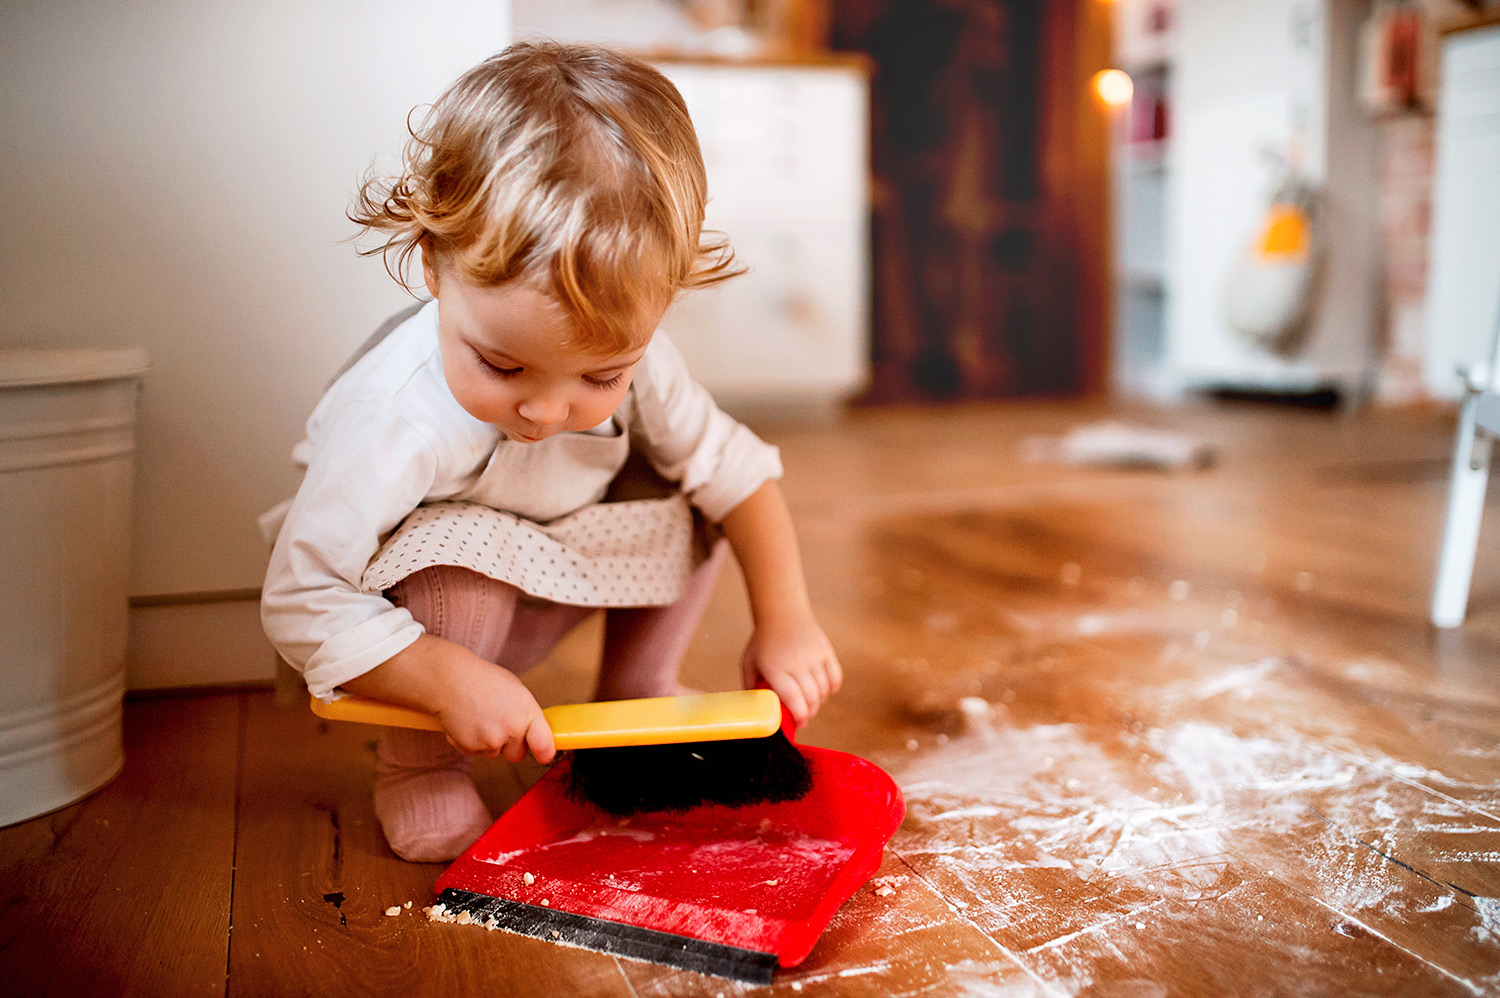 Obowiązki domowe dopasowane do wieku dziecka